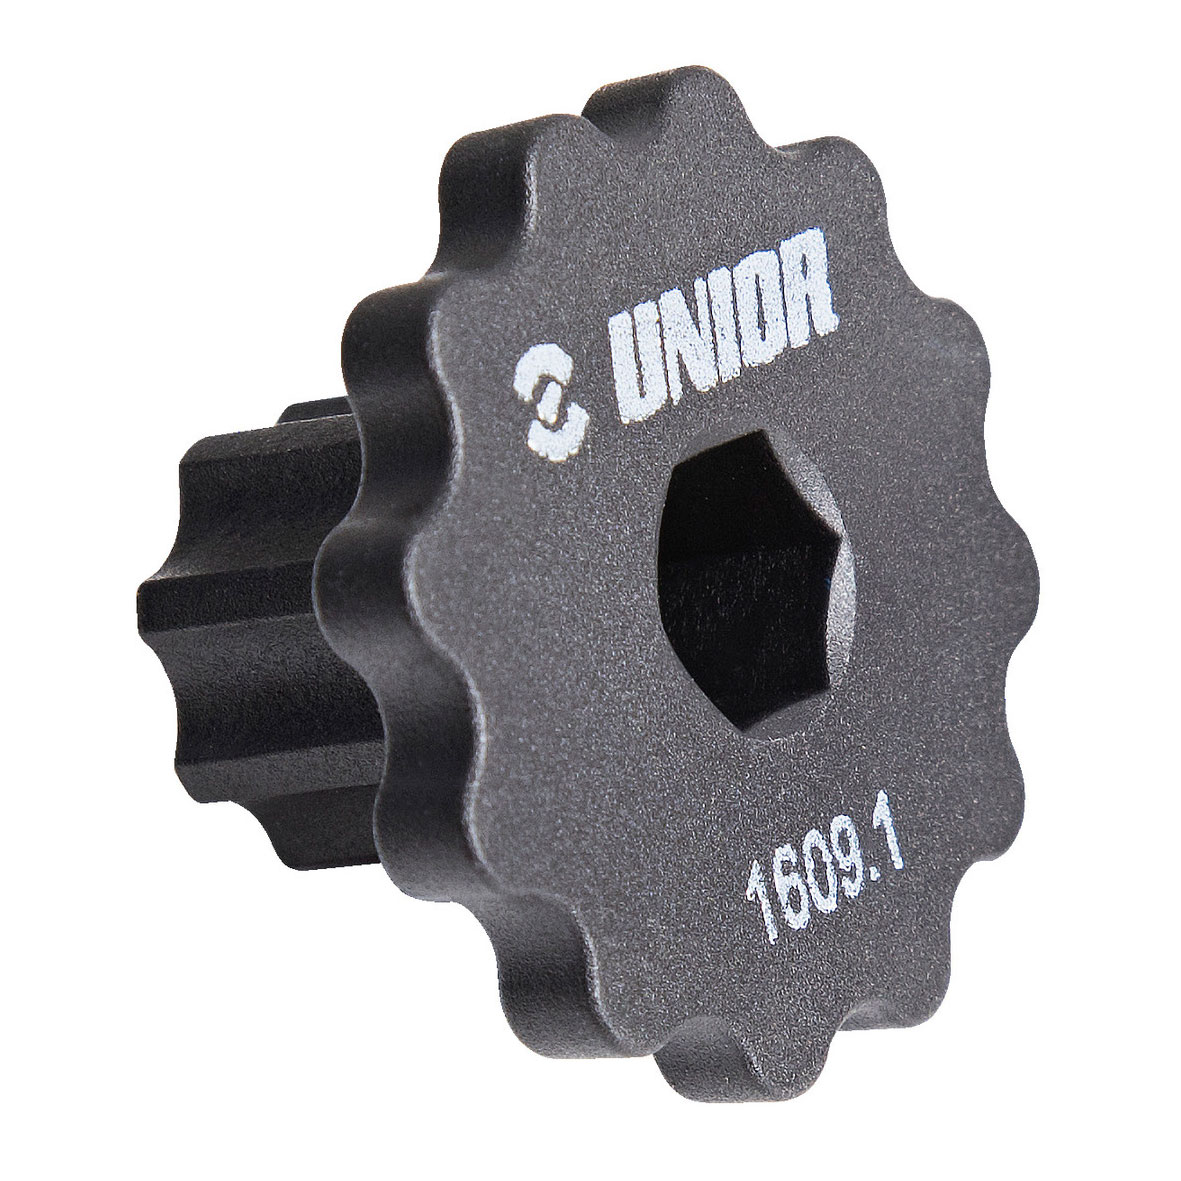 Produktbild von Unior Bike Tools Kurbelmontageschlüssel - 1609.1